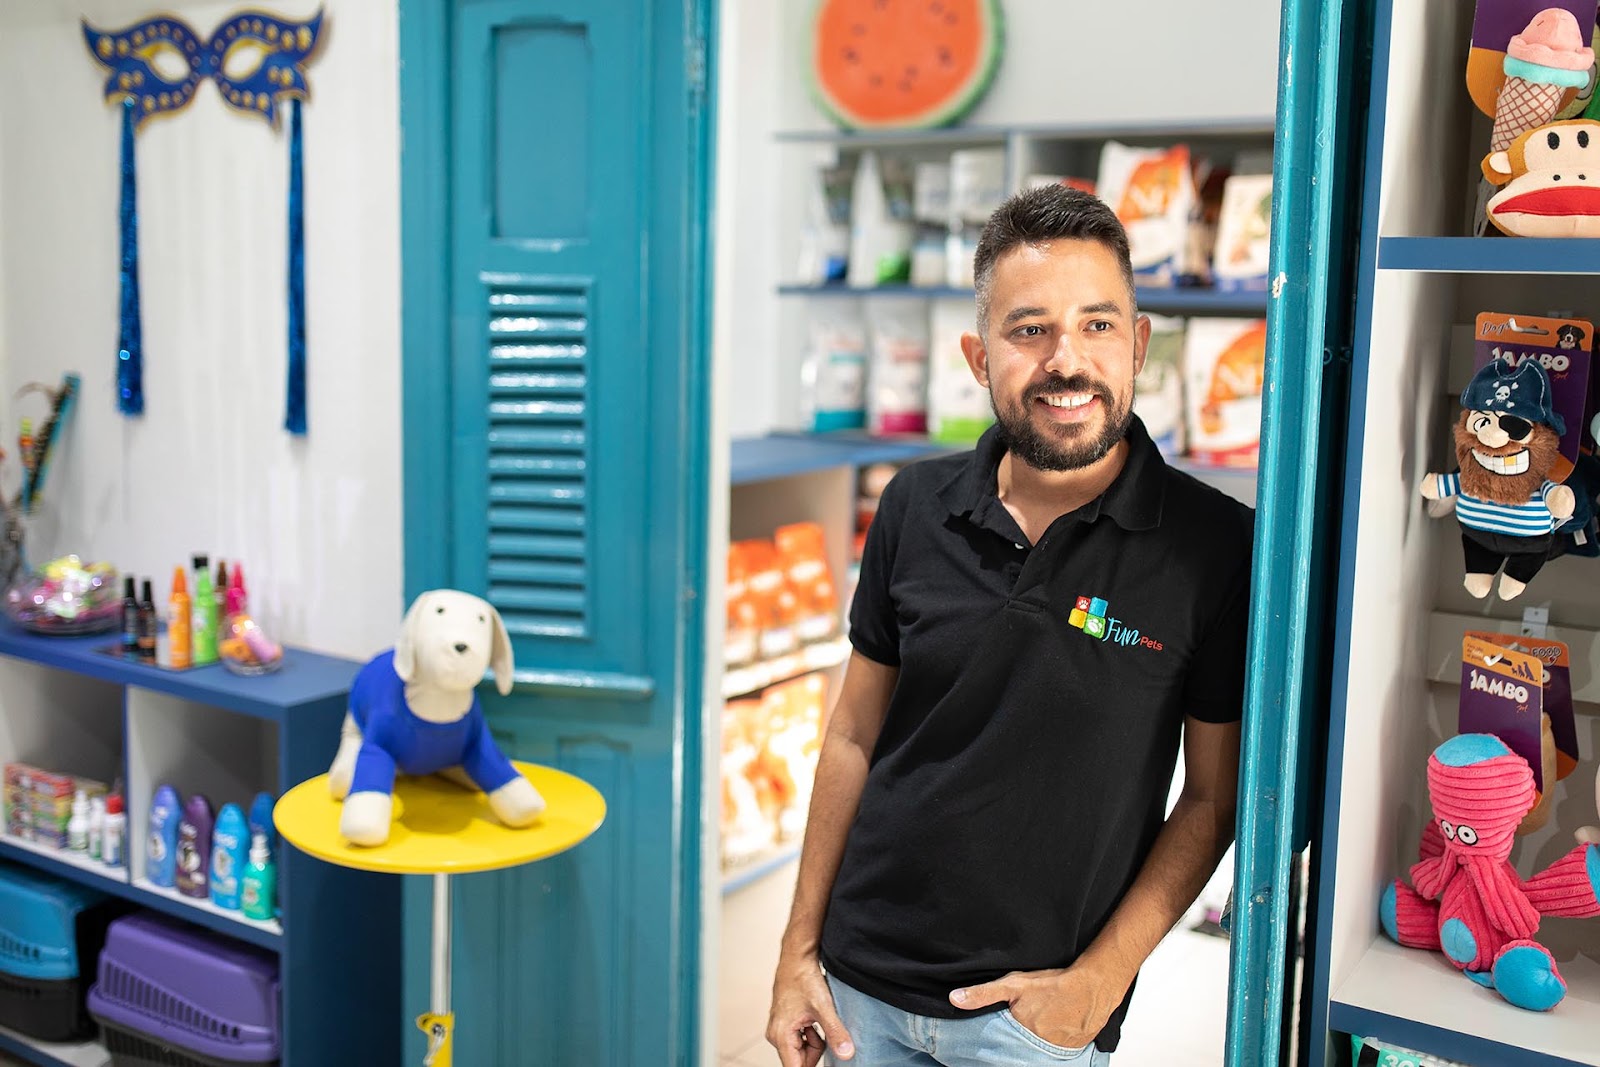 Homem moreno, de cabelo e barba grisalhos, veste camisa preta do pet shop Fun Pets. Ele está apoiado na porta e sorri olhando franquia de pet shop 